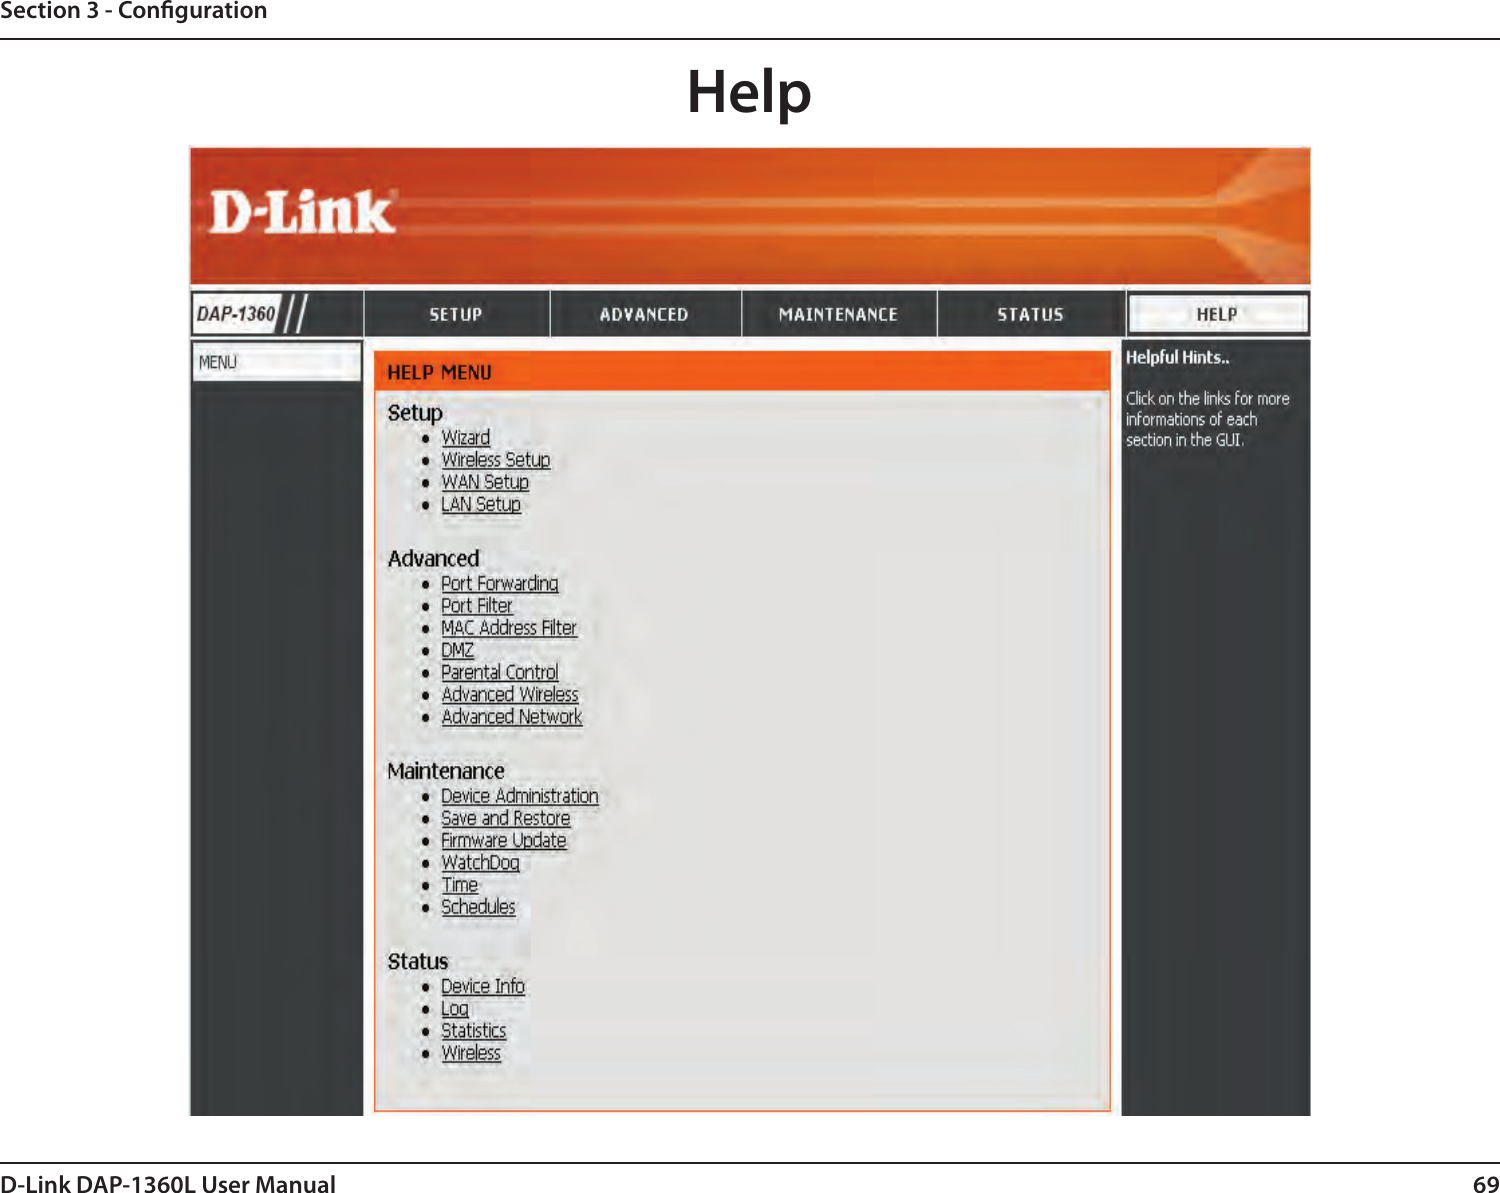 69D-Link DAP-1360L User ManualSection 3 - CongurationHelp